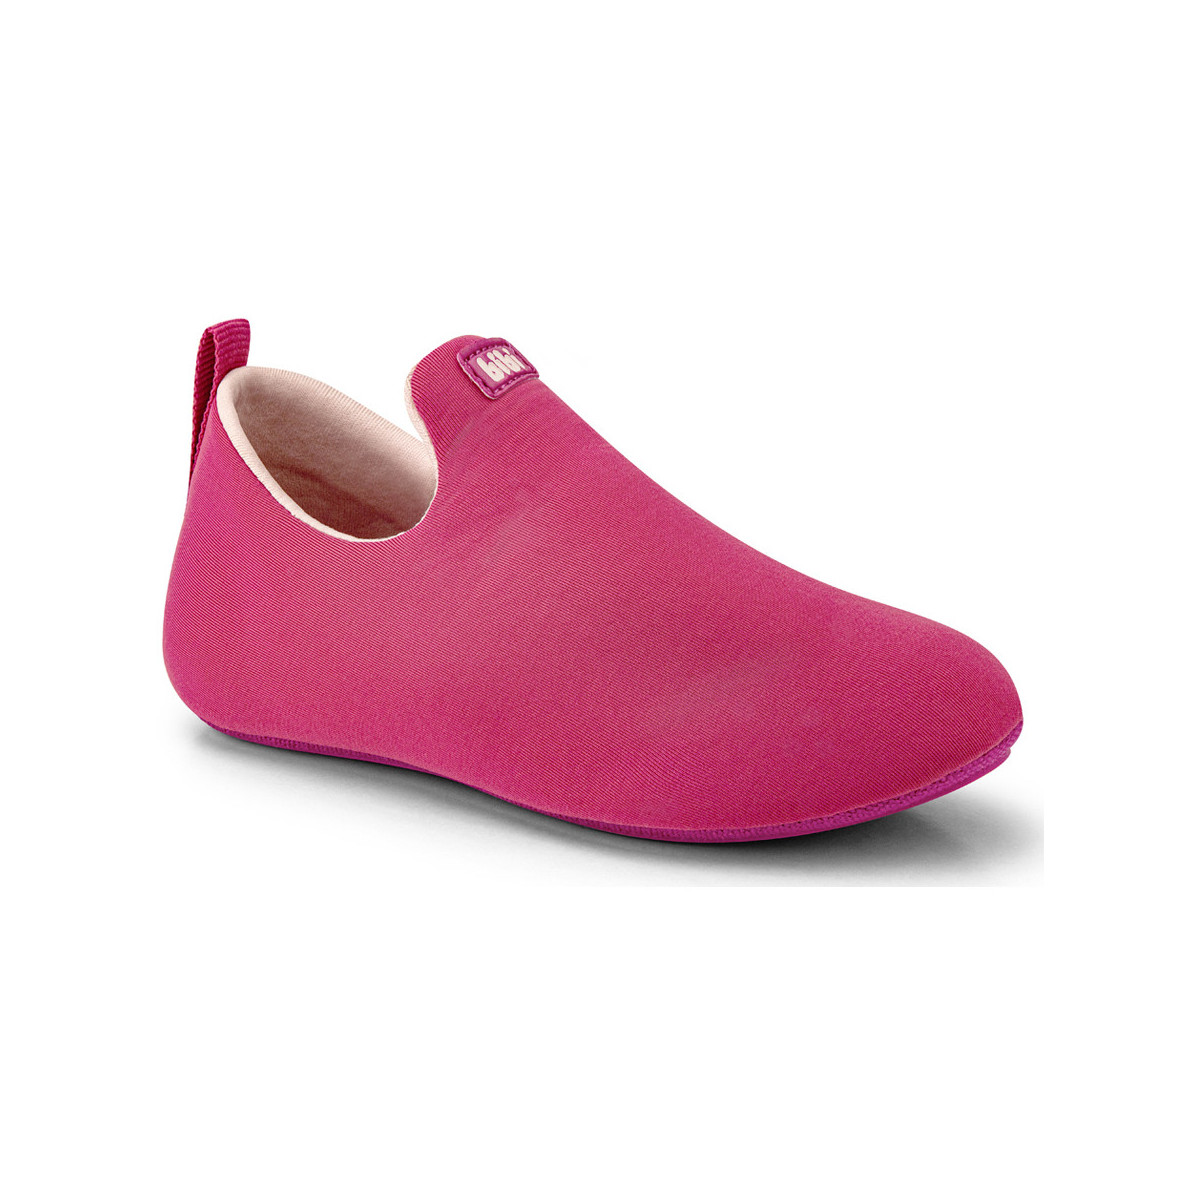 Pantofi Fete Sneakers Bibi Shoes Rezerva Pantof Bibi 2WAY Rodie roz